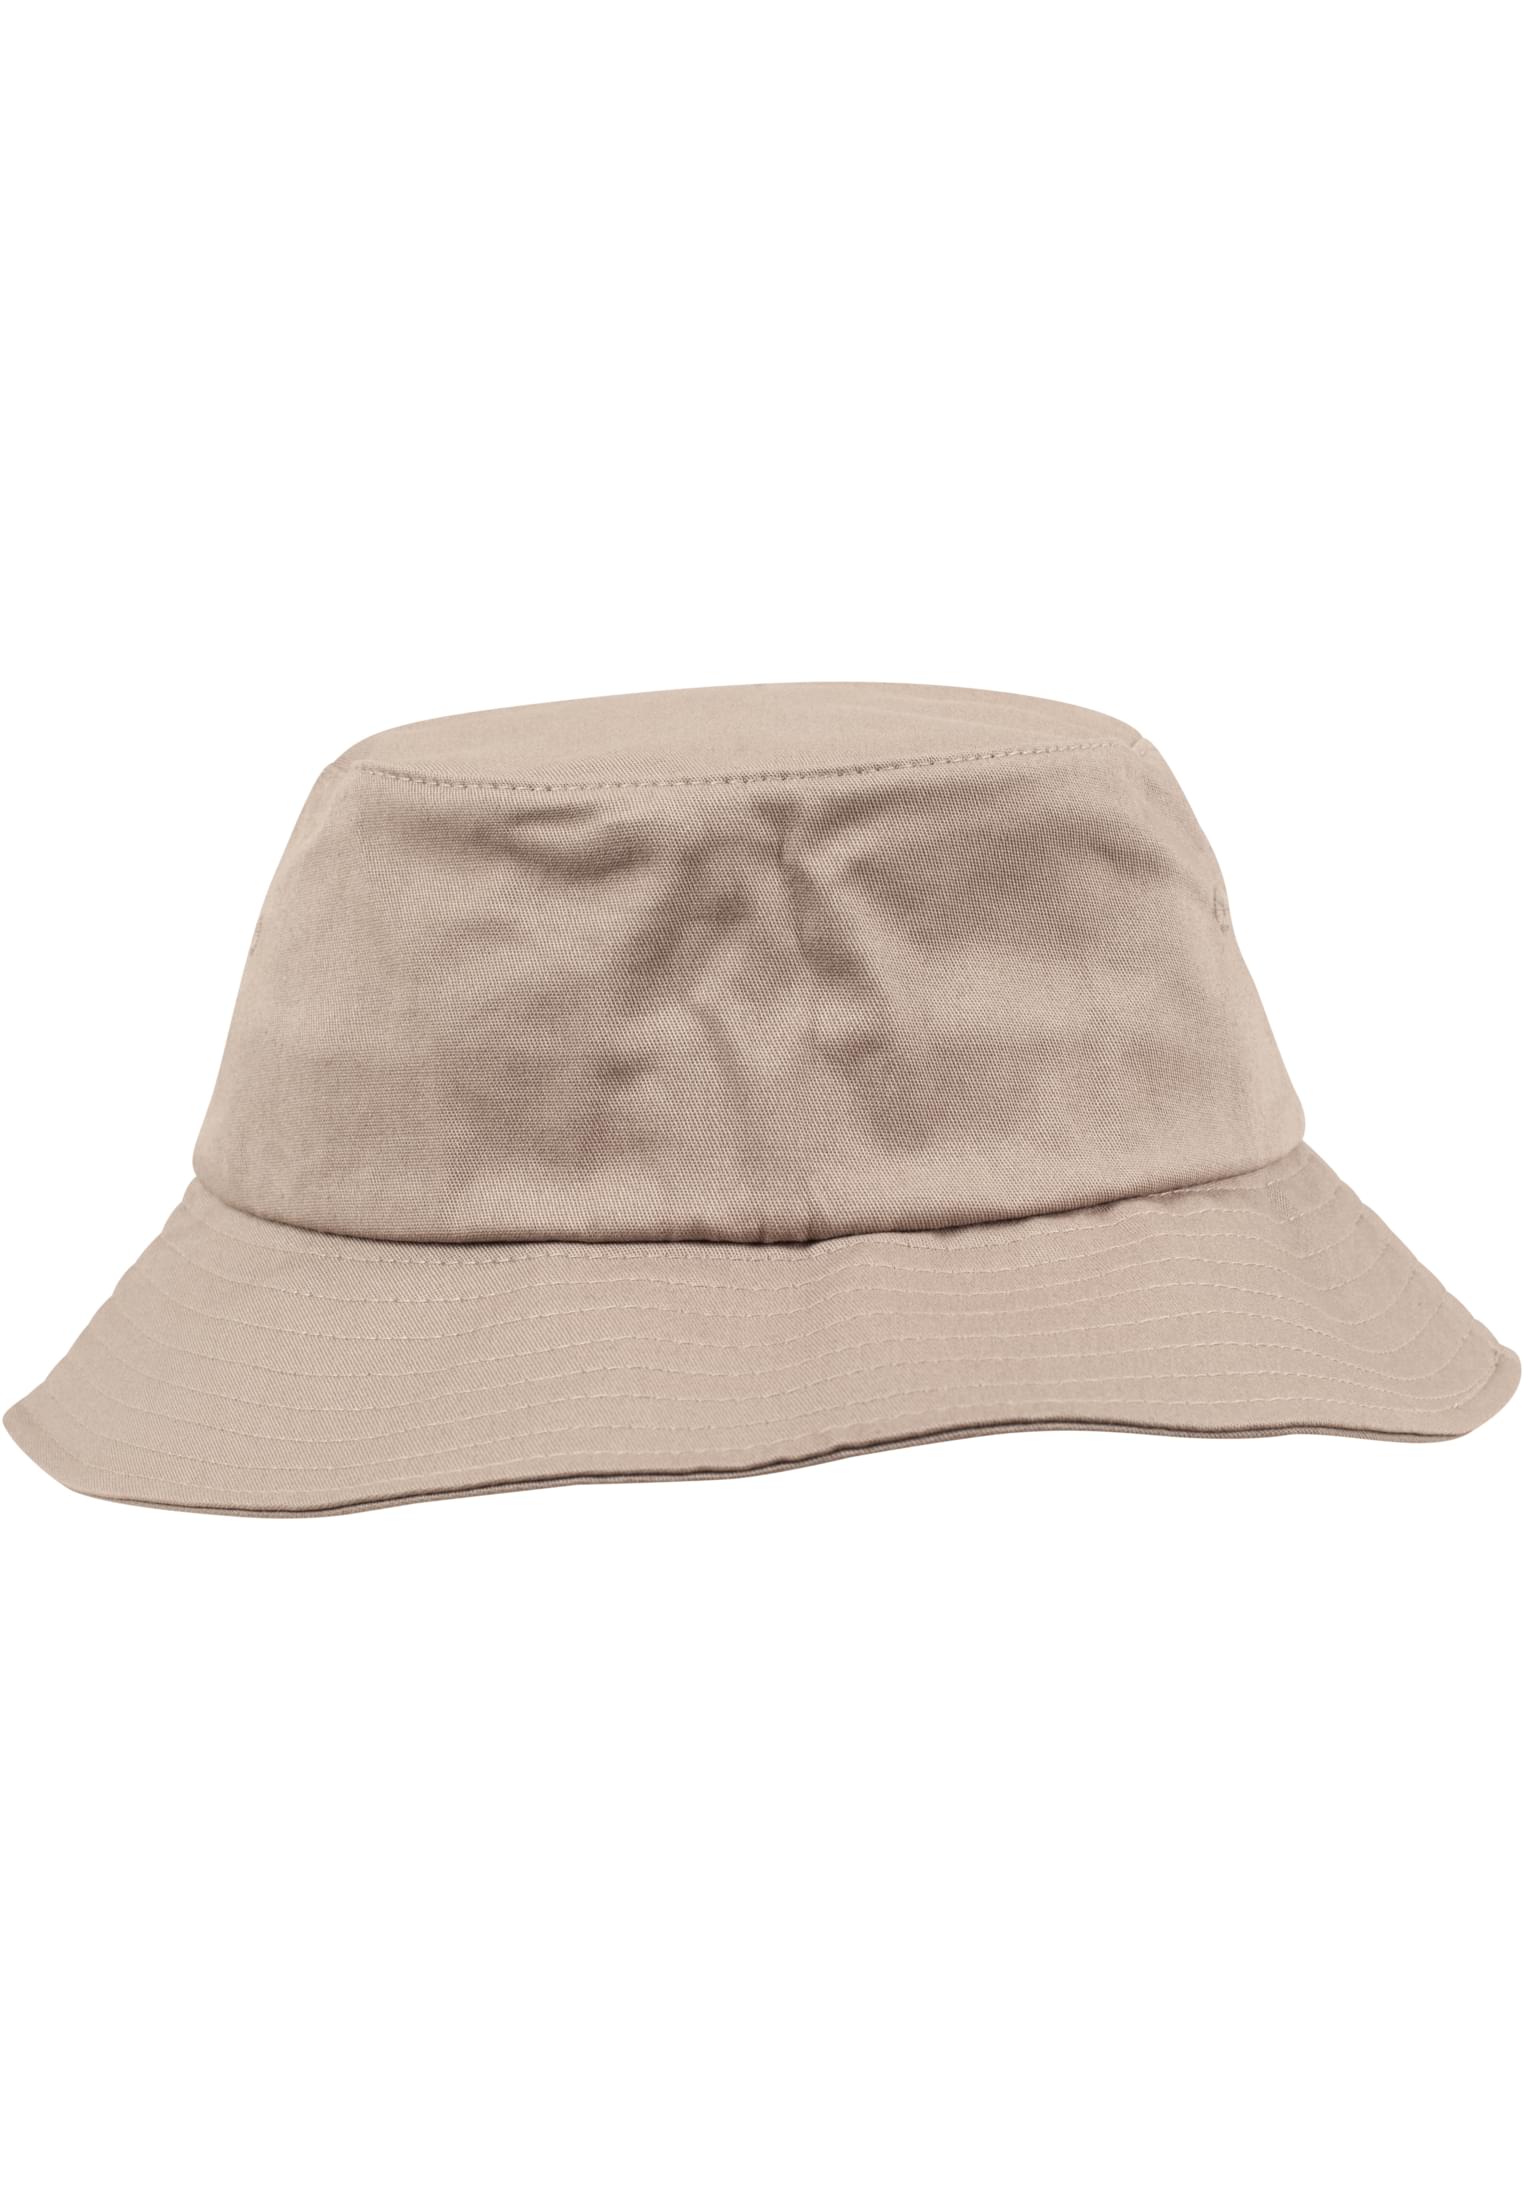 Twill Flexfit Cotton Bucket Hat-5003